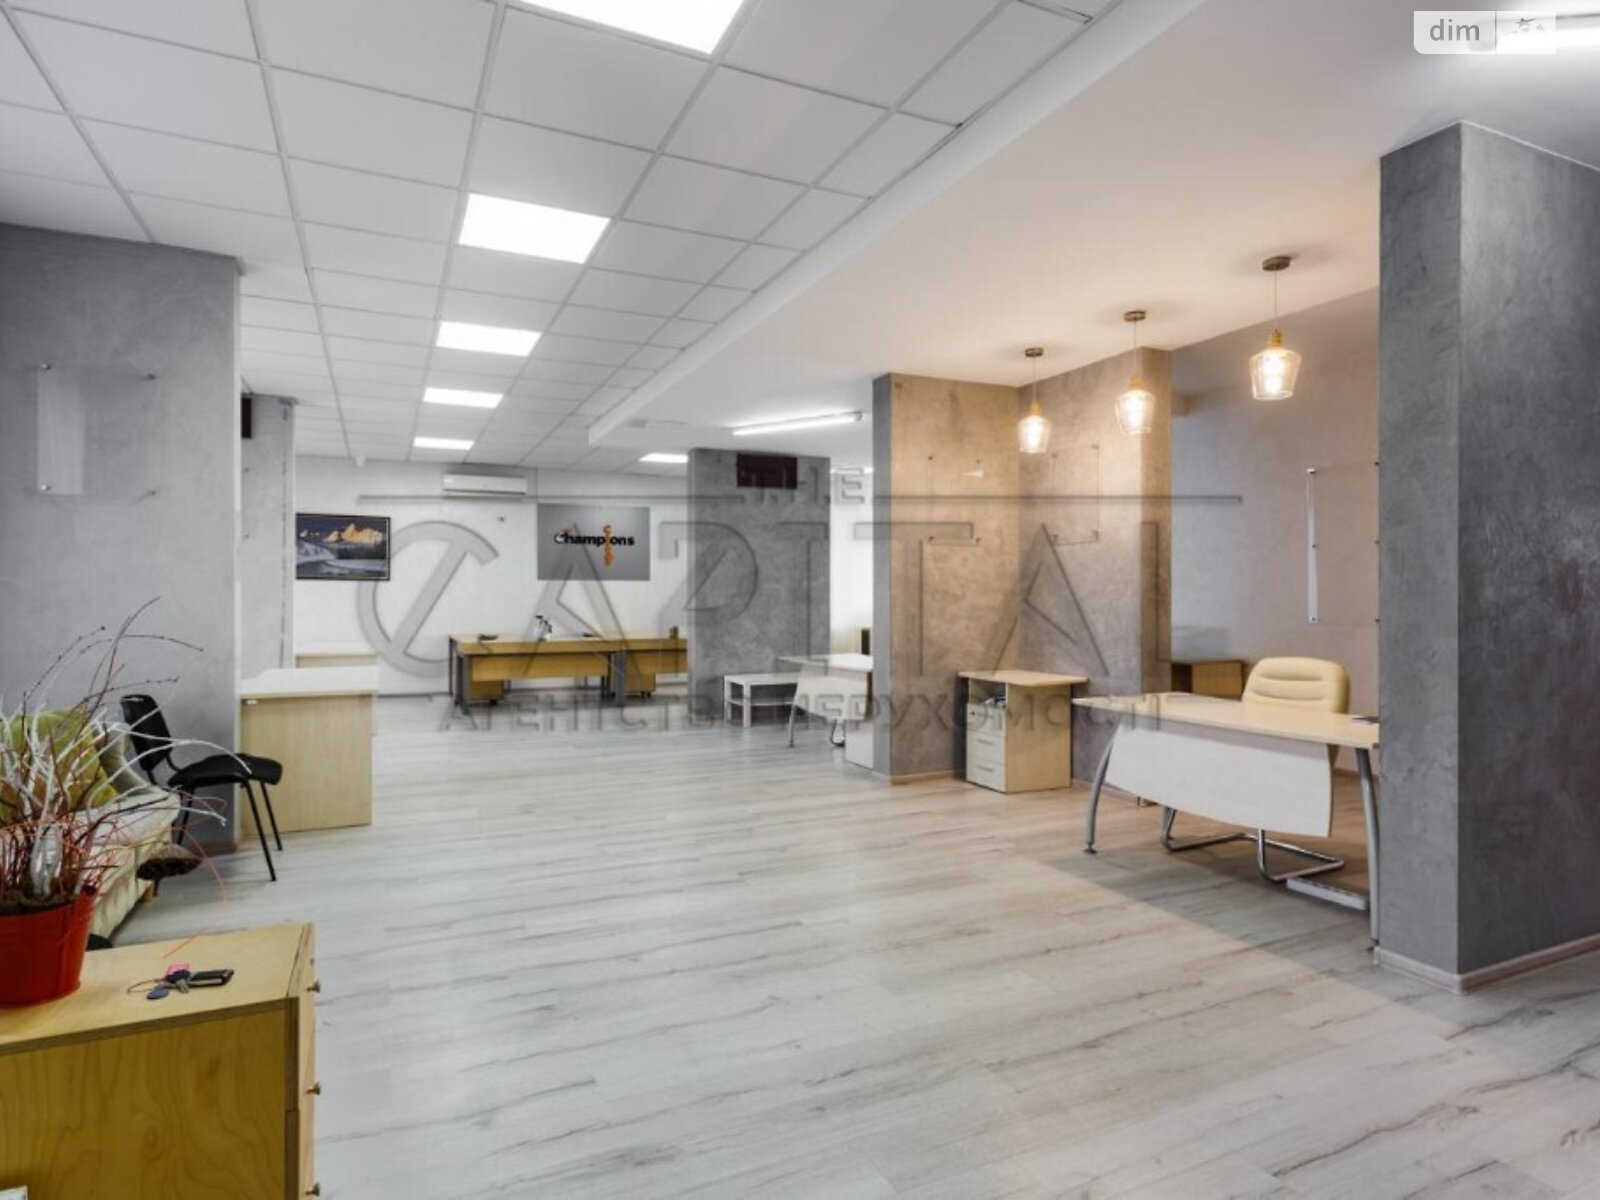 Аренда офисного помещения в Киеве, Ракетная улица 1, помещений -, этаж - 1 фото 1